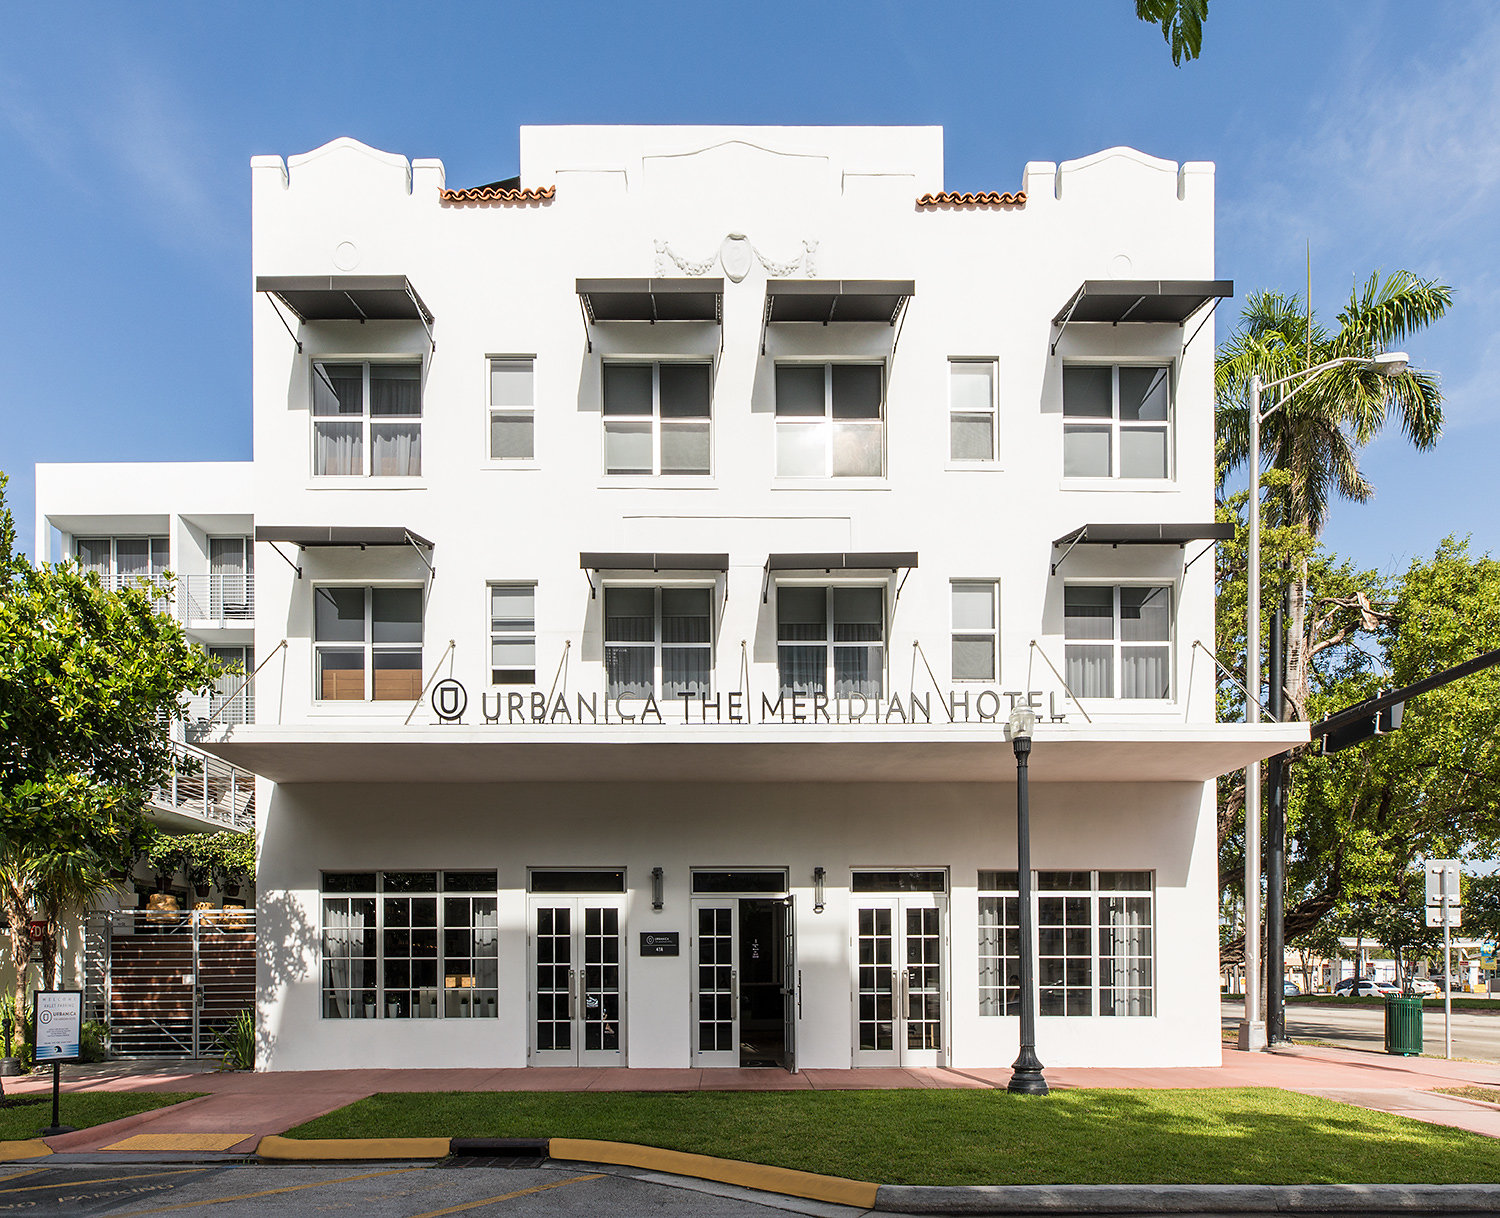 Urbanica Hotels está creando una zona argentina en Miami Beach